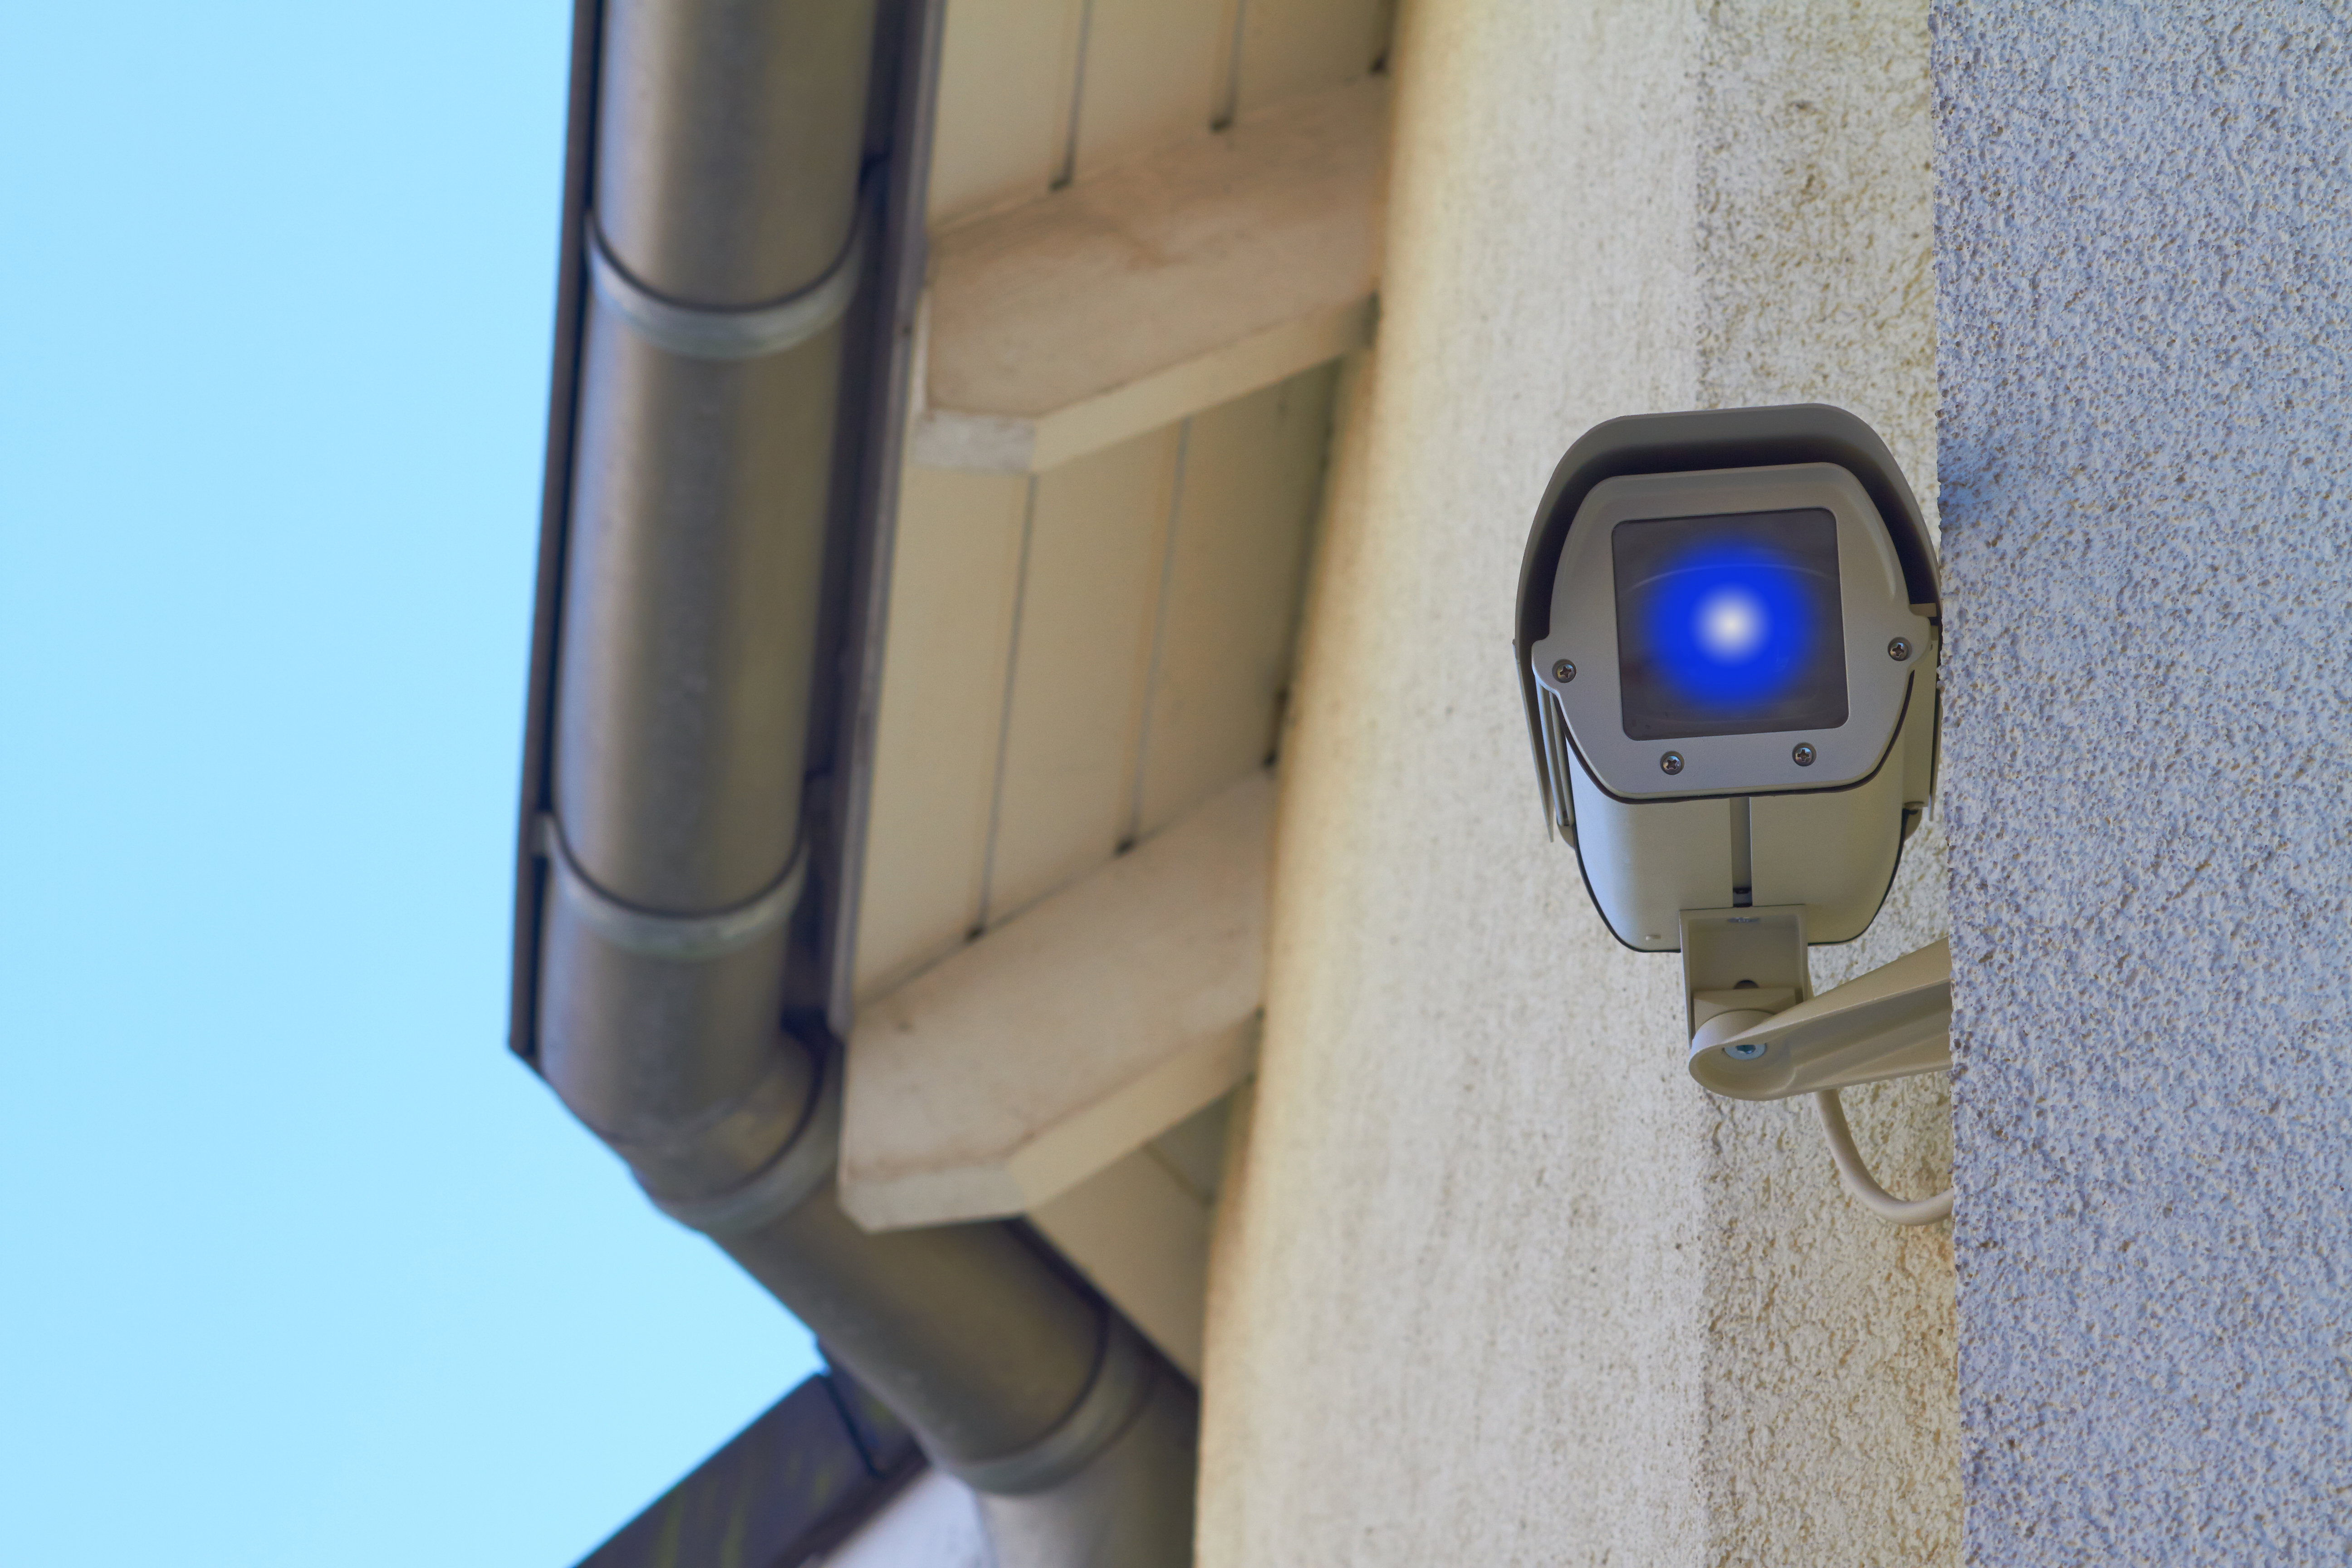 A CCTV camera | Source: Shutterstock